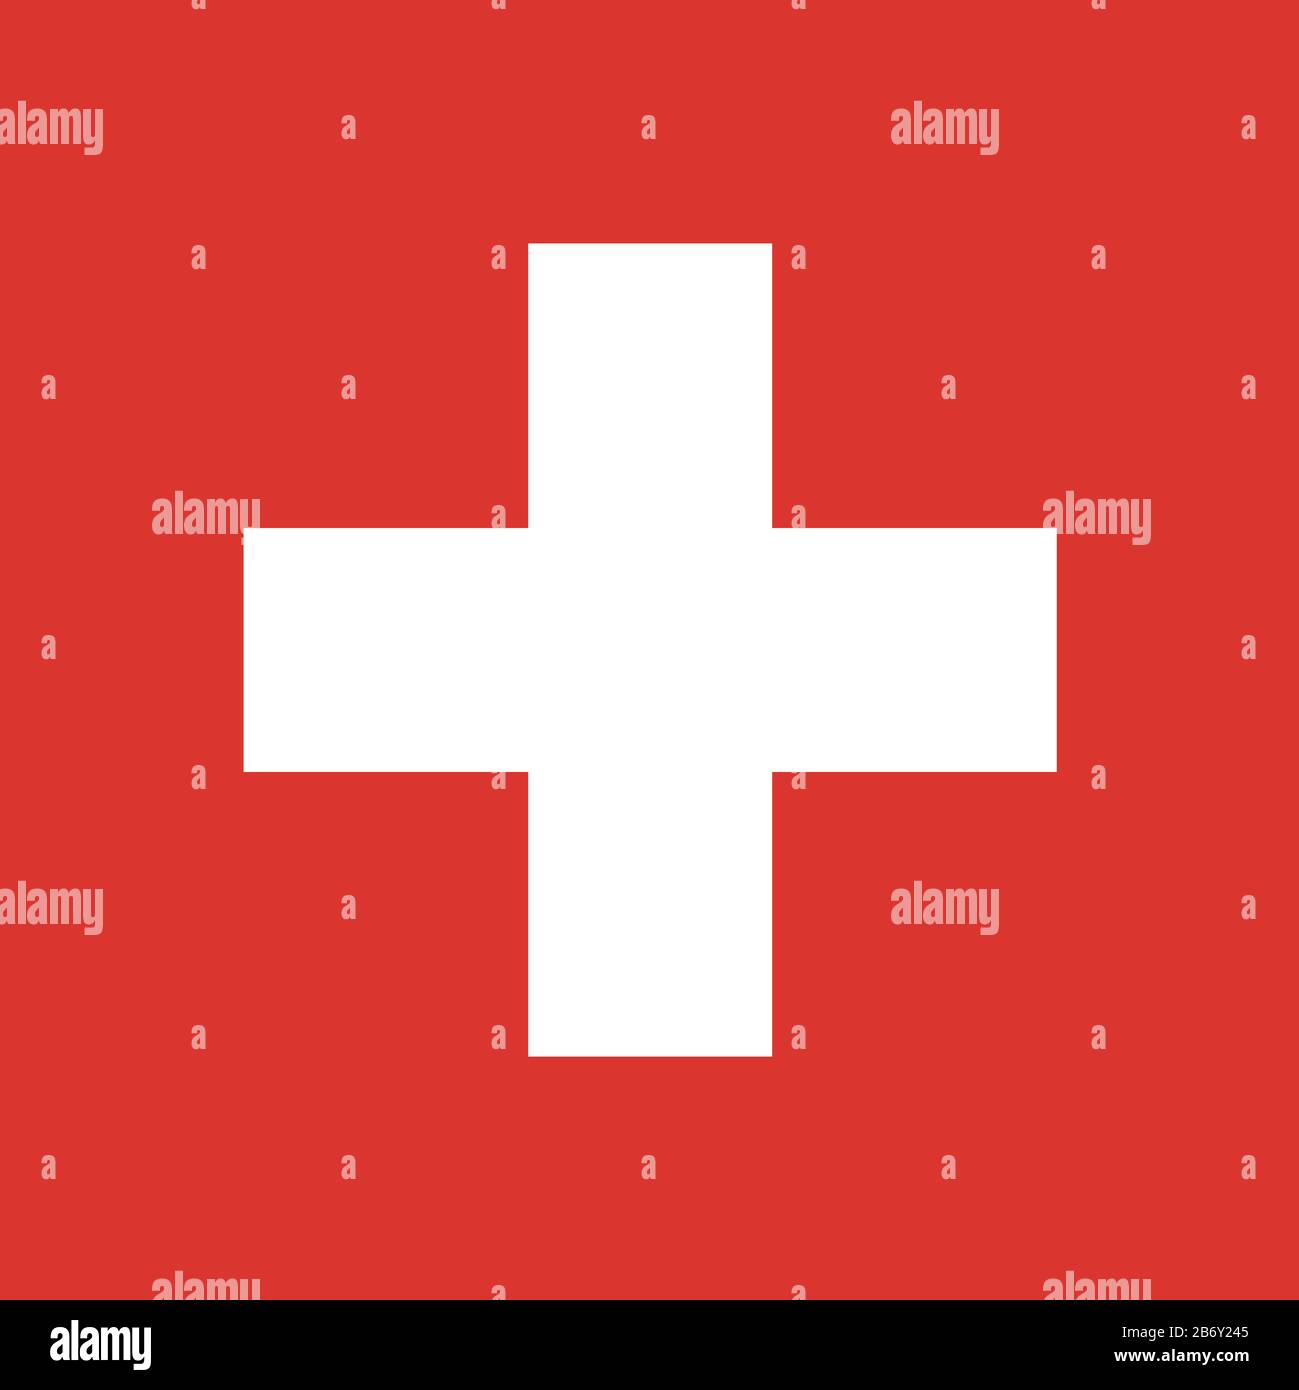 Flagge der Schweiz - Standardverhältnis Schweizer Flagge - True RGB-Farbmodus Stockfoto